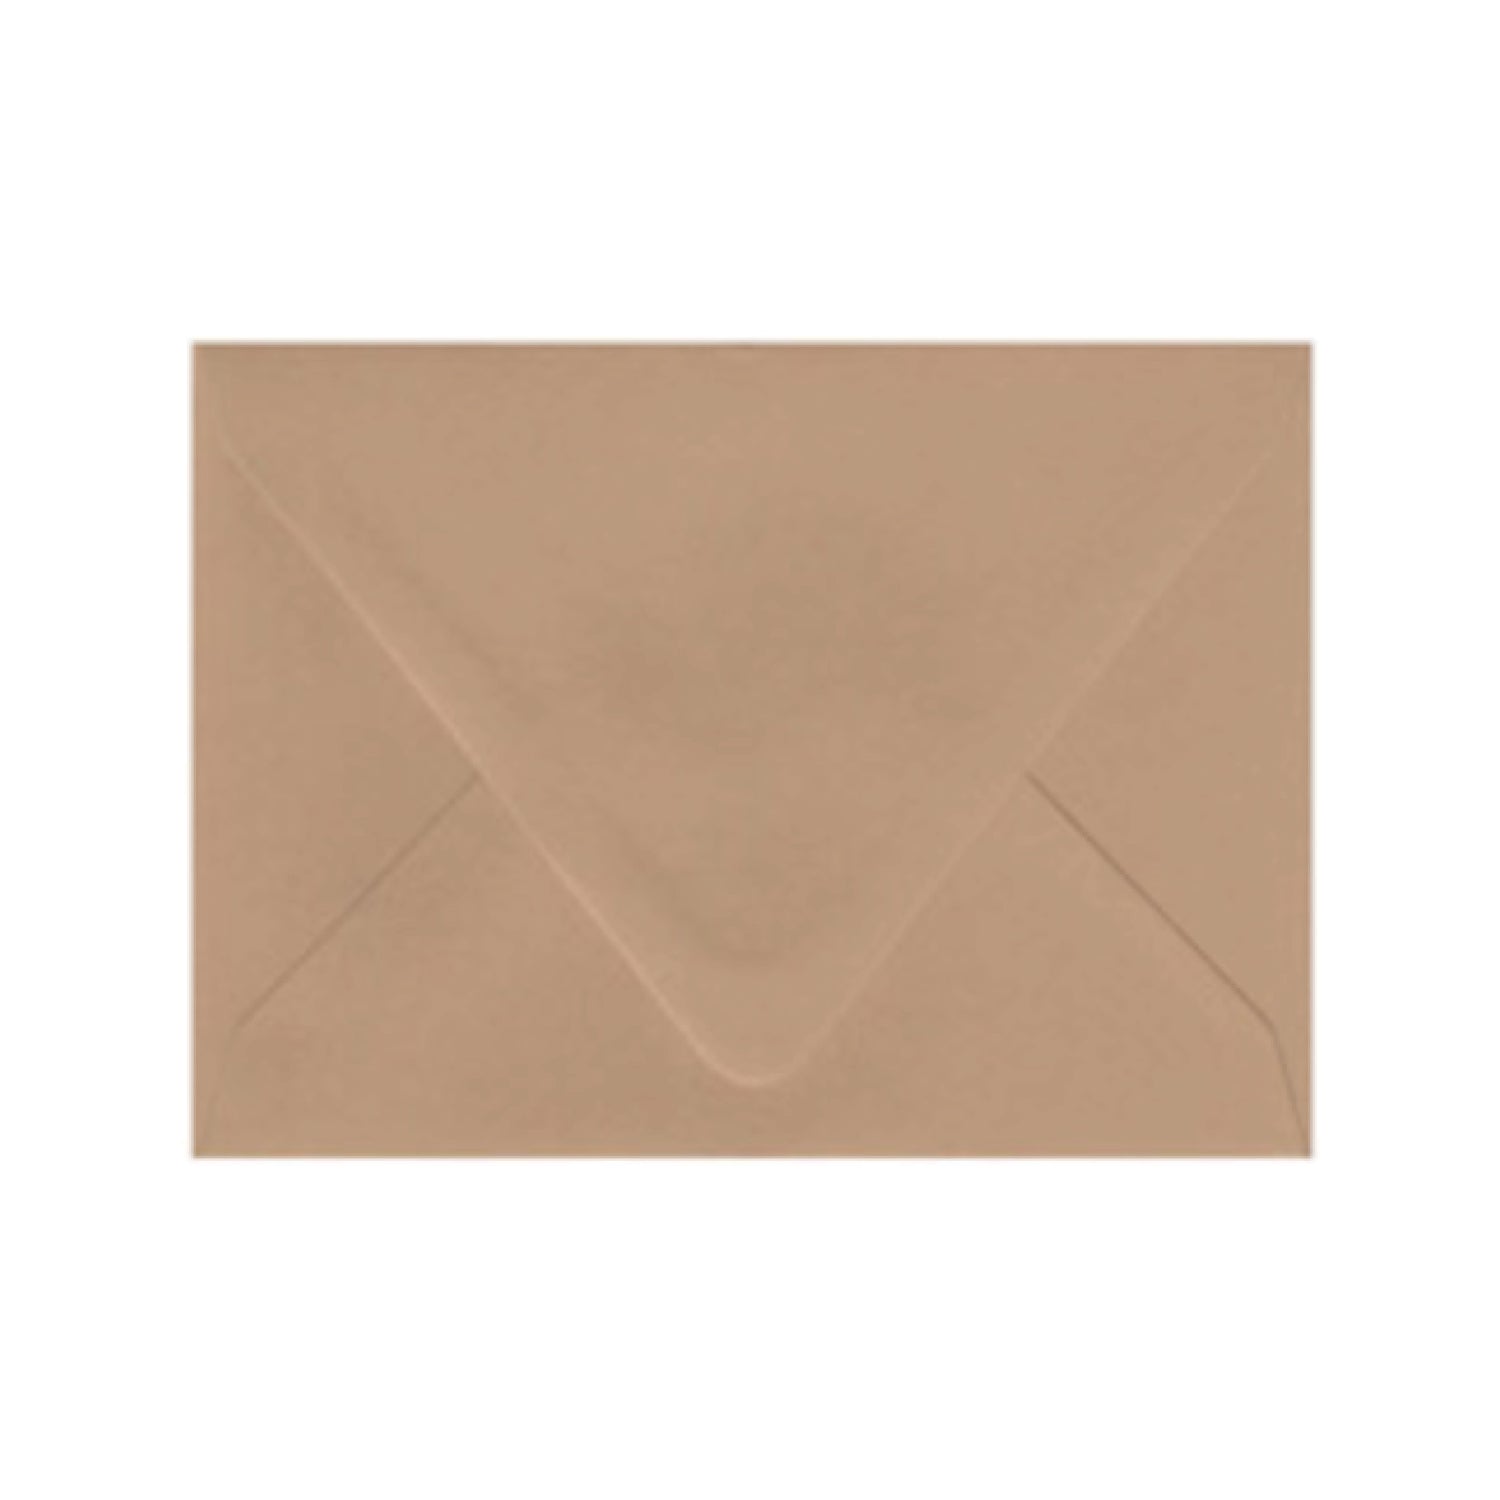 Harvest Brown Envelopes - Pack of 25